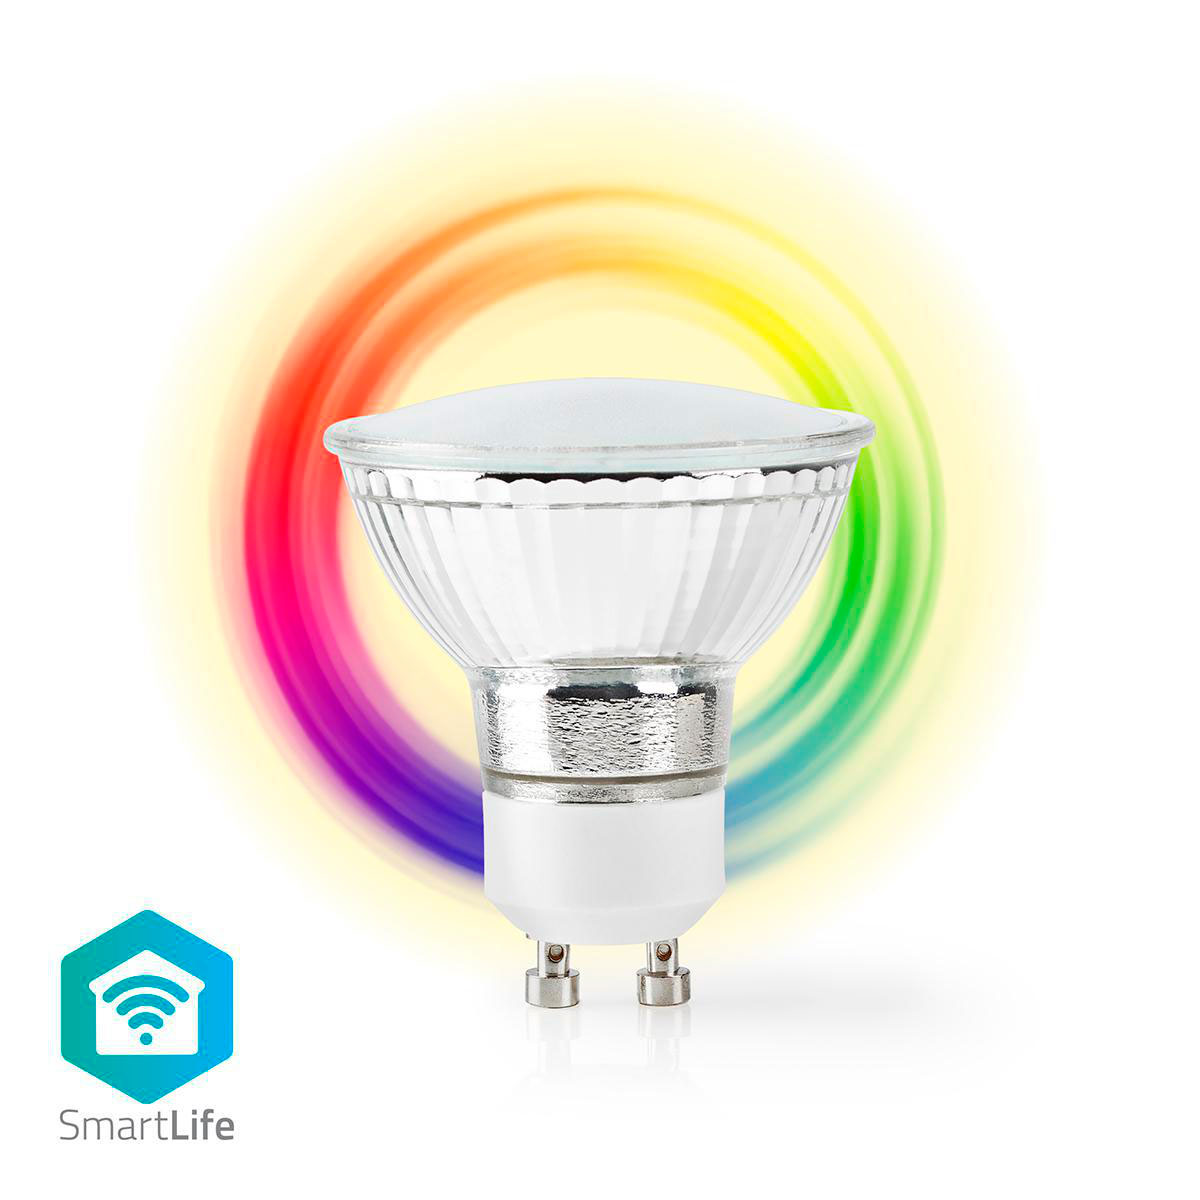 Temmelig fætter bytte rundt Bedste LED Pærer - Vælg Rigtigt med vores LED-Guide!